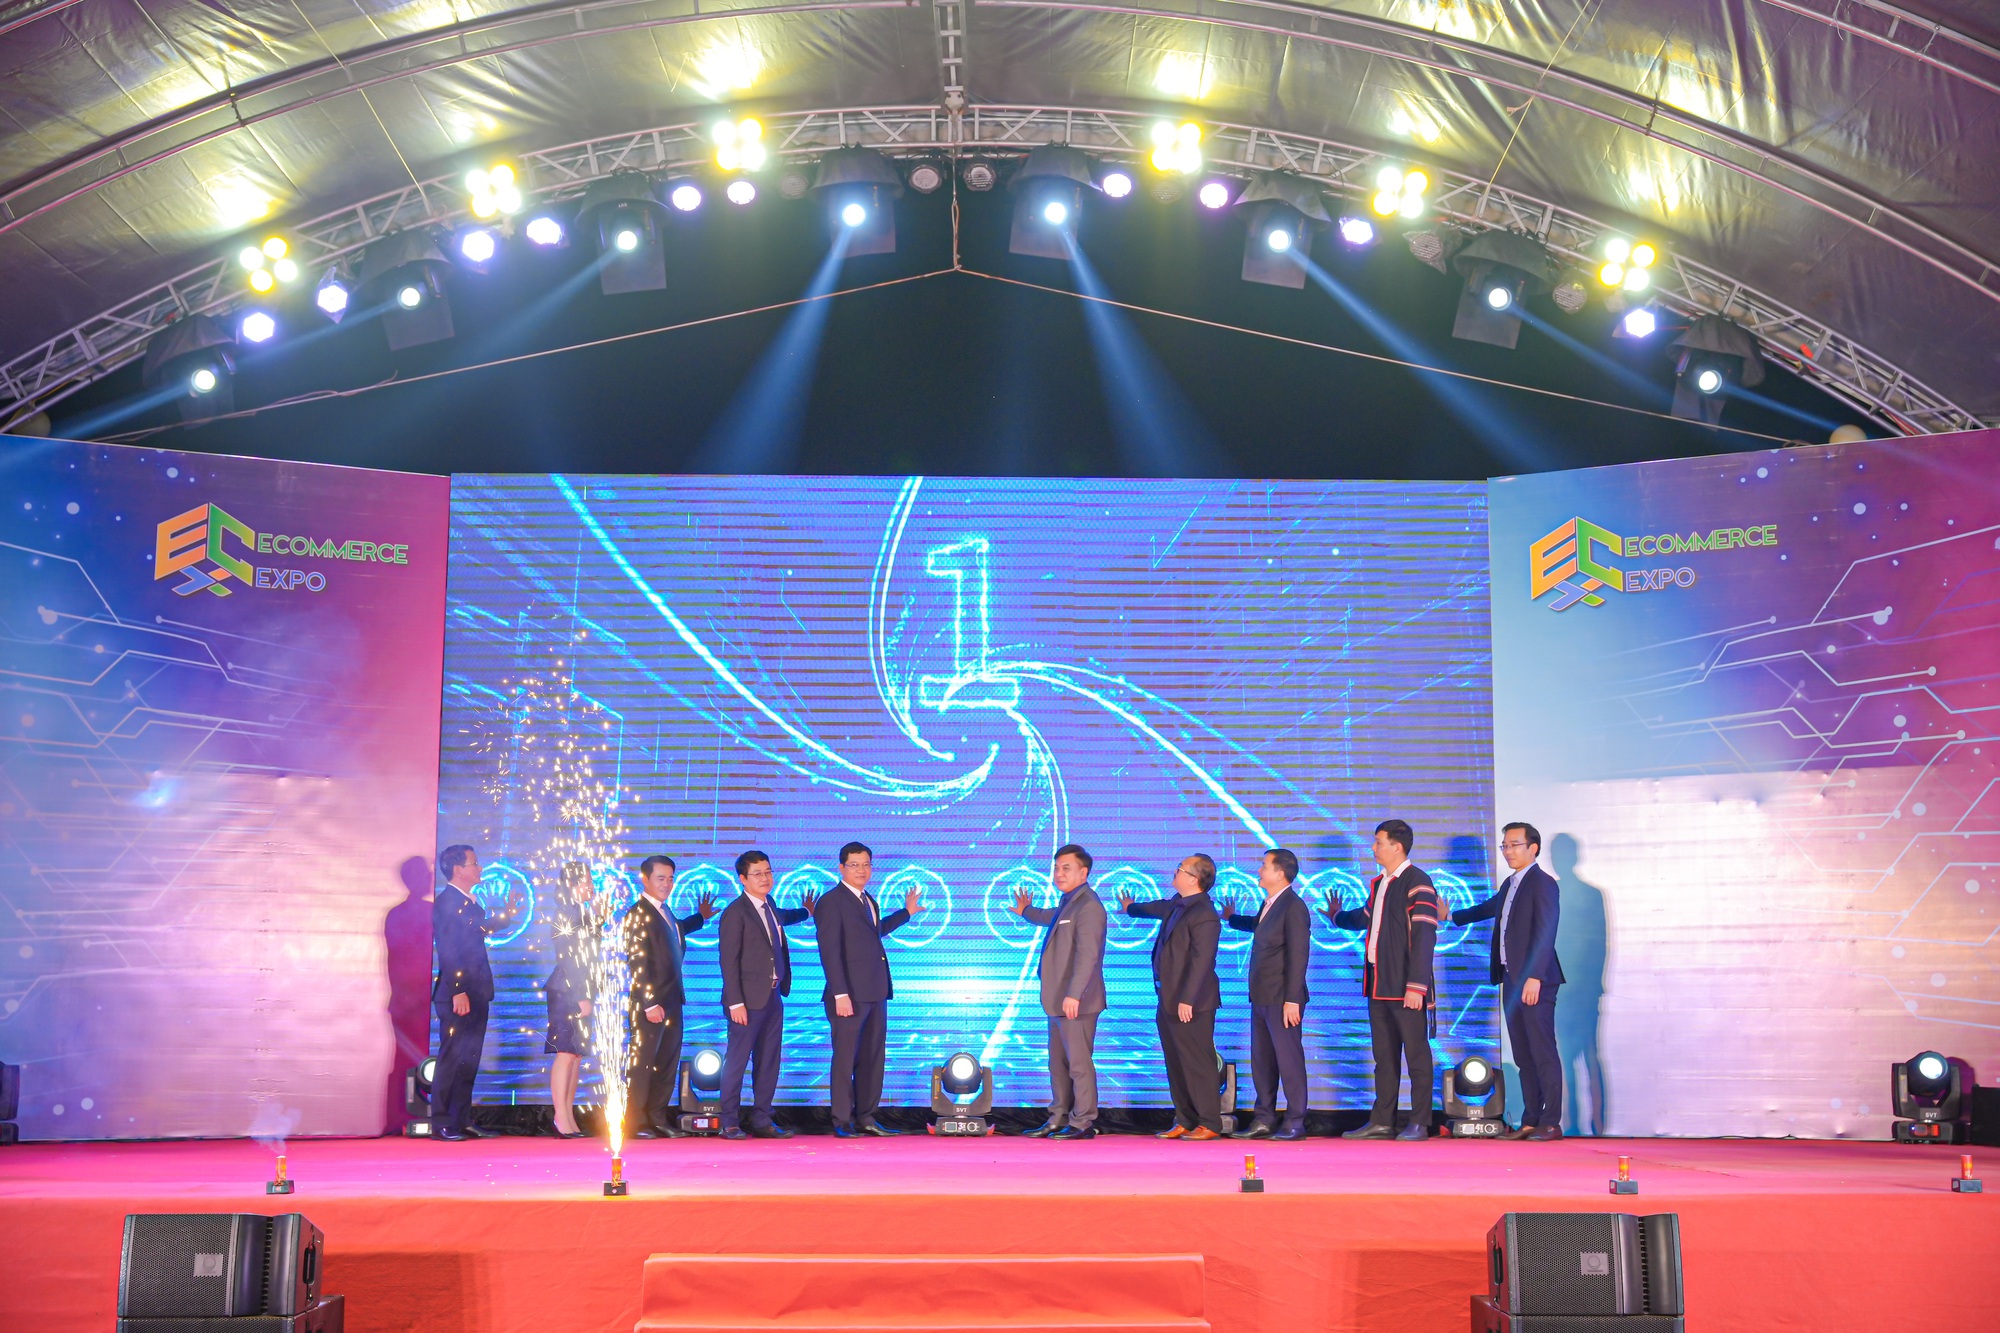 Mua bán online bùng nổ, hàng trăm sản phẩm OCOP Việt lên sàn thương mại điện tử - Ảnh 1.